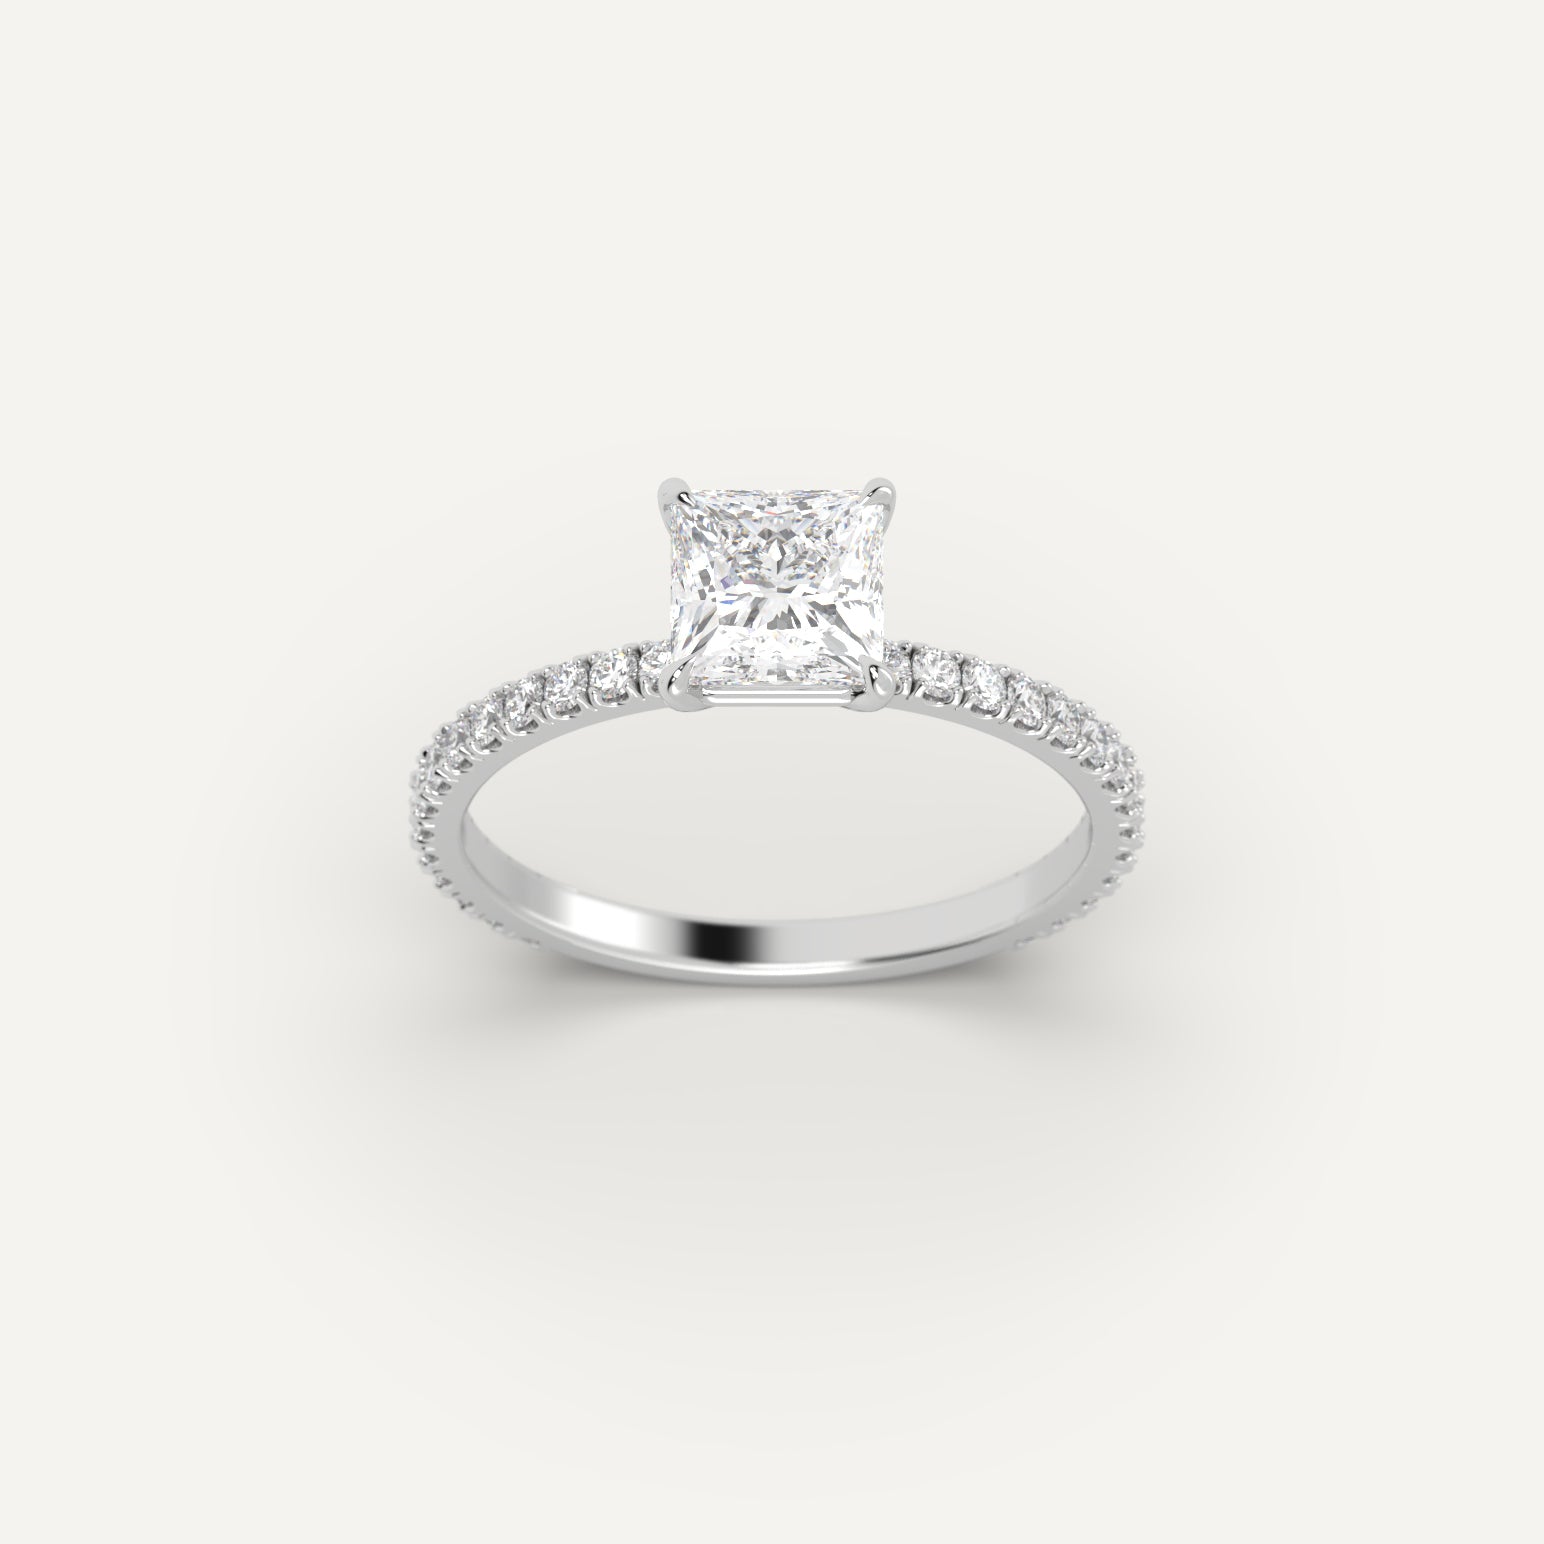 White Gold 1.2 Carat Engagement Ring